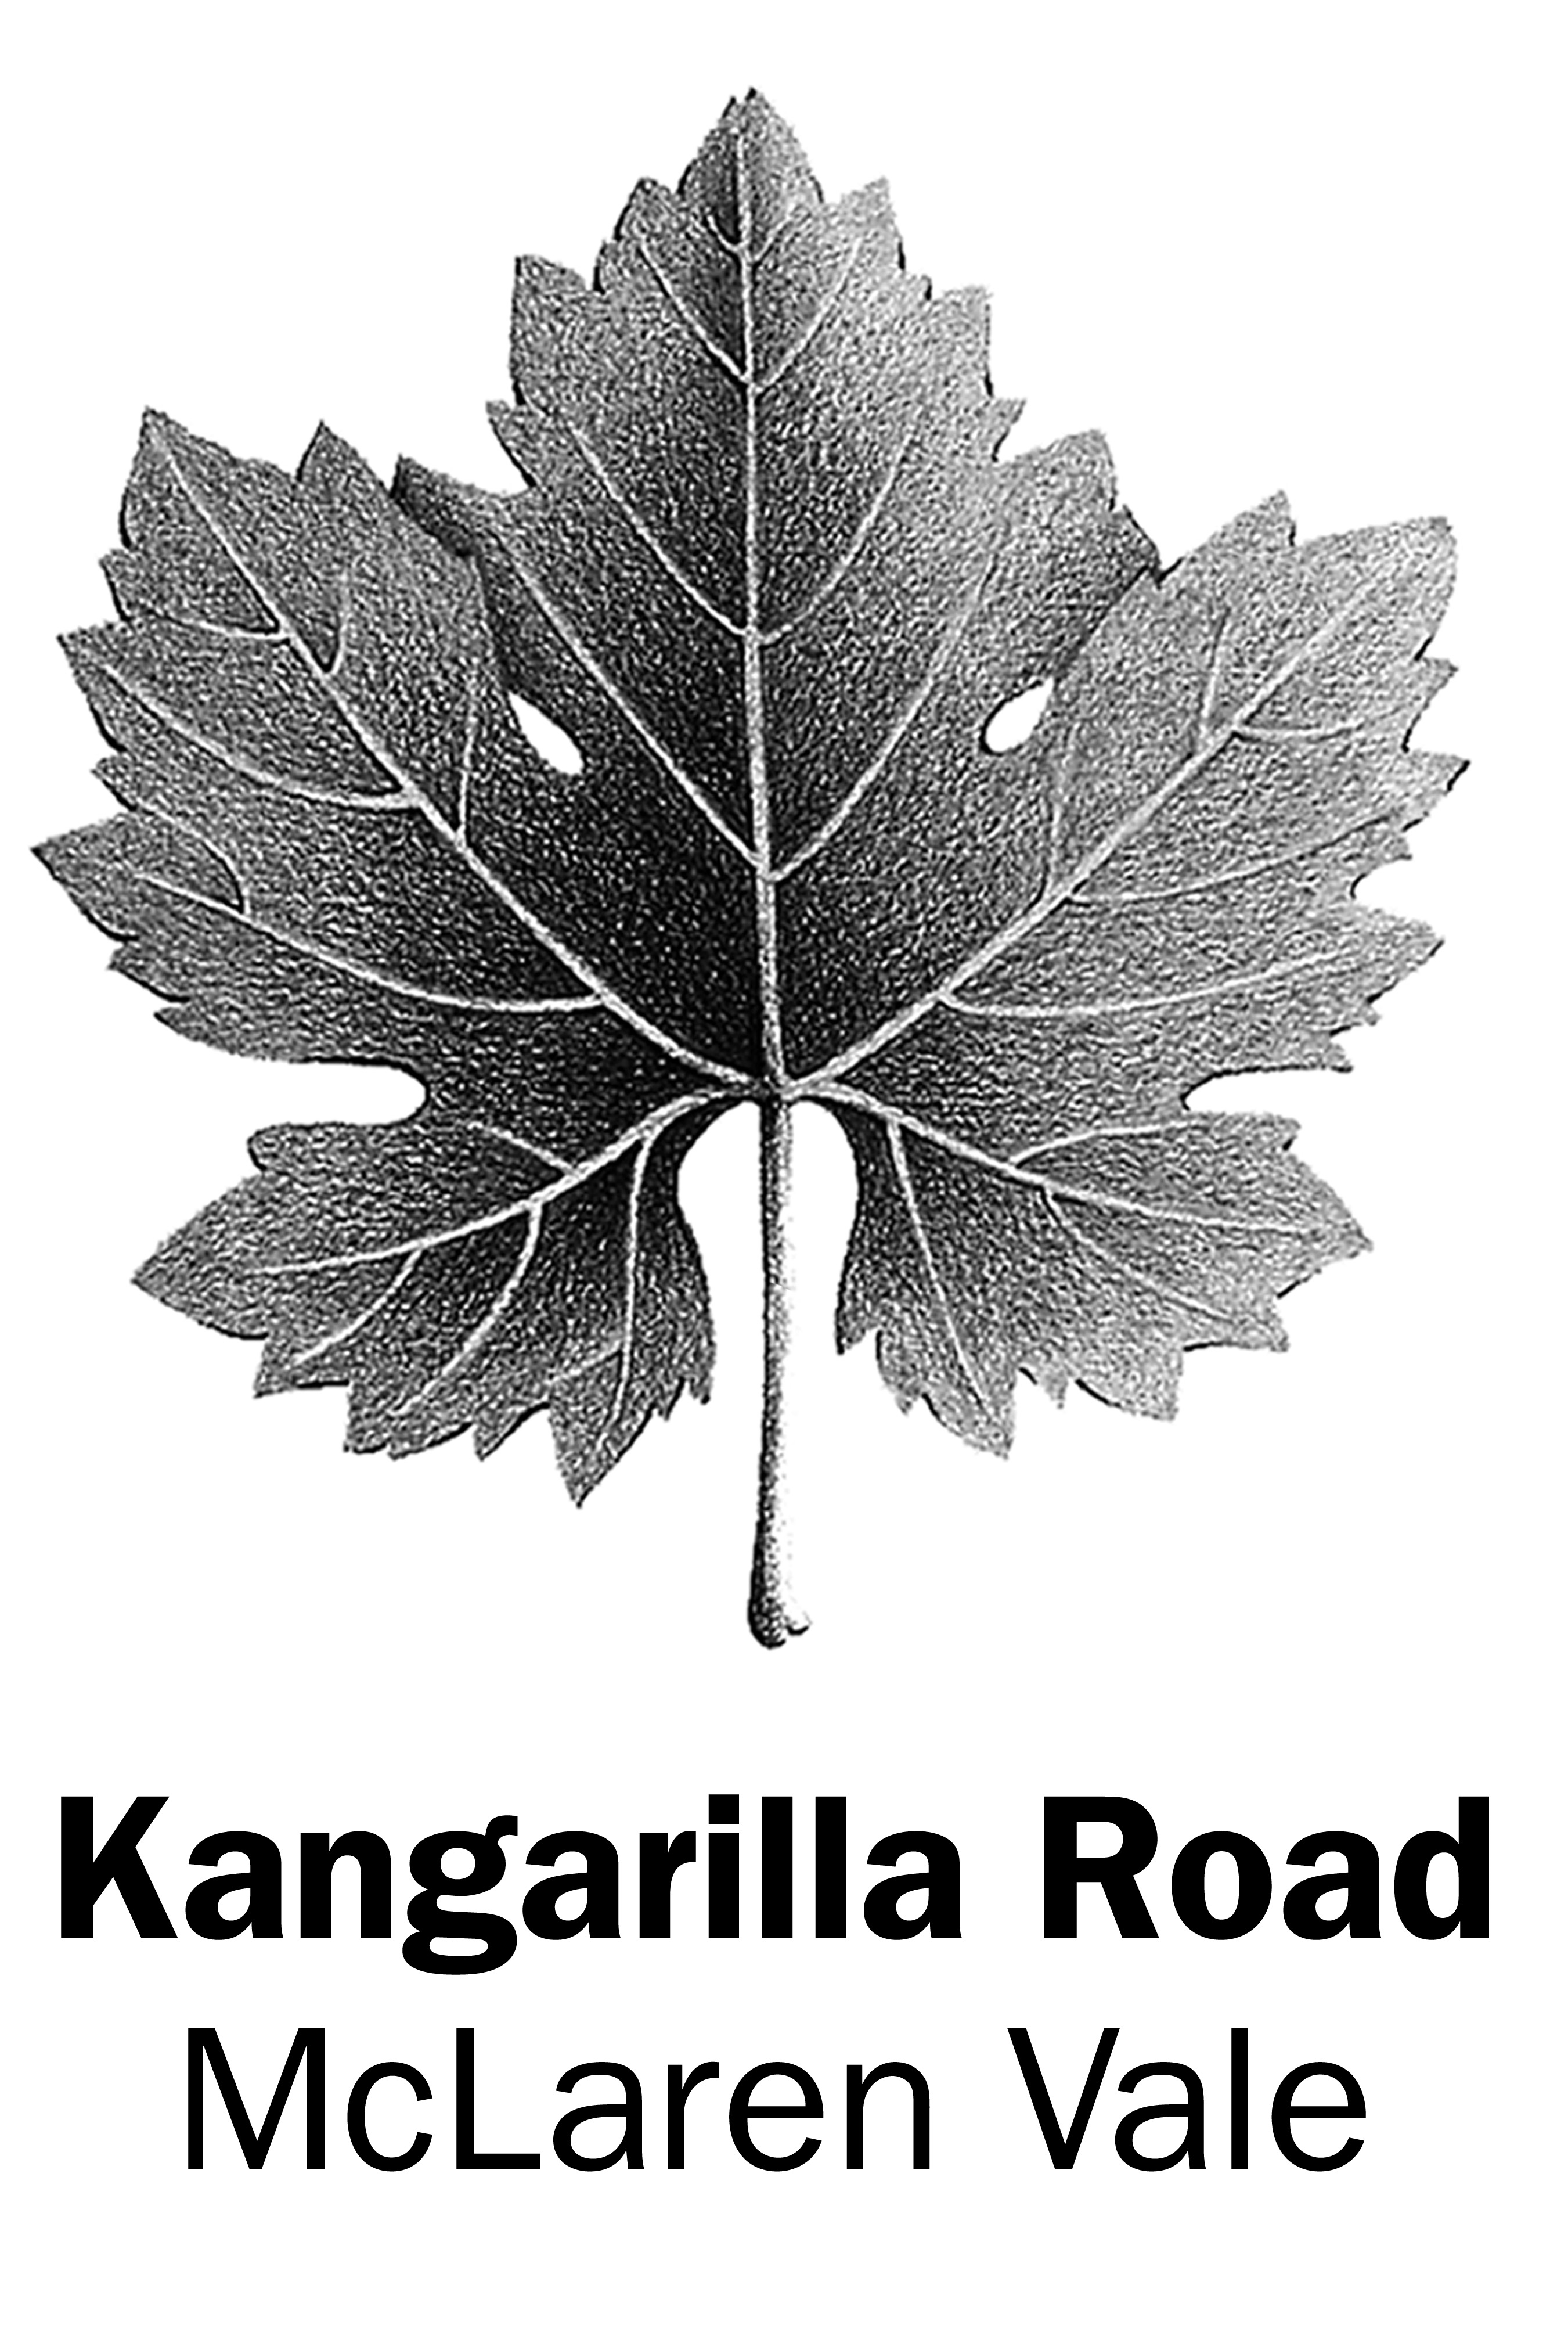 Kangarilla Road logo